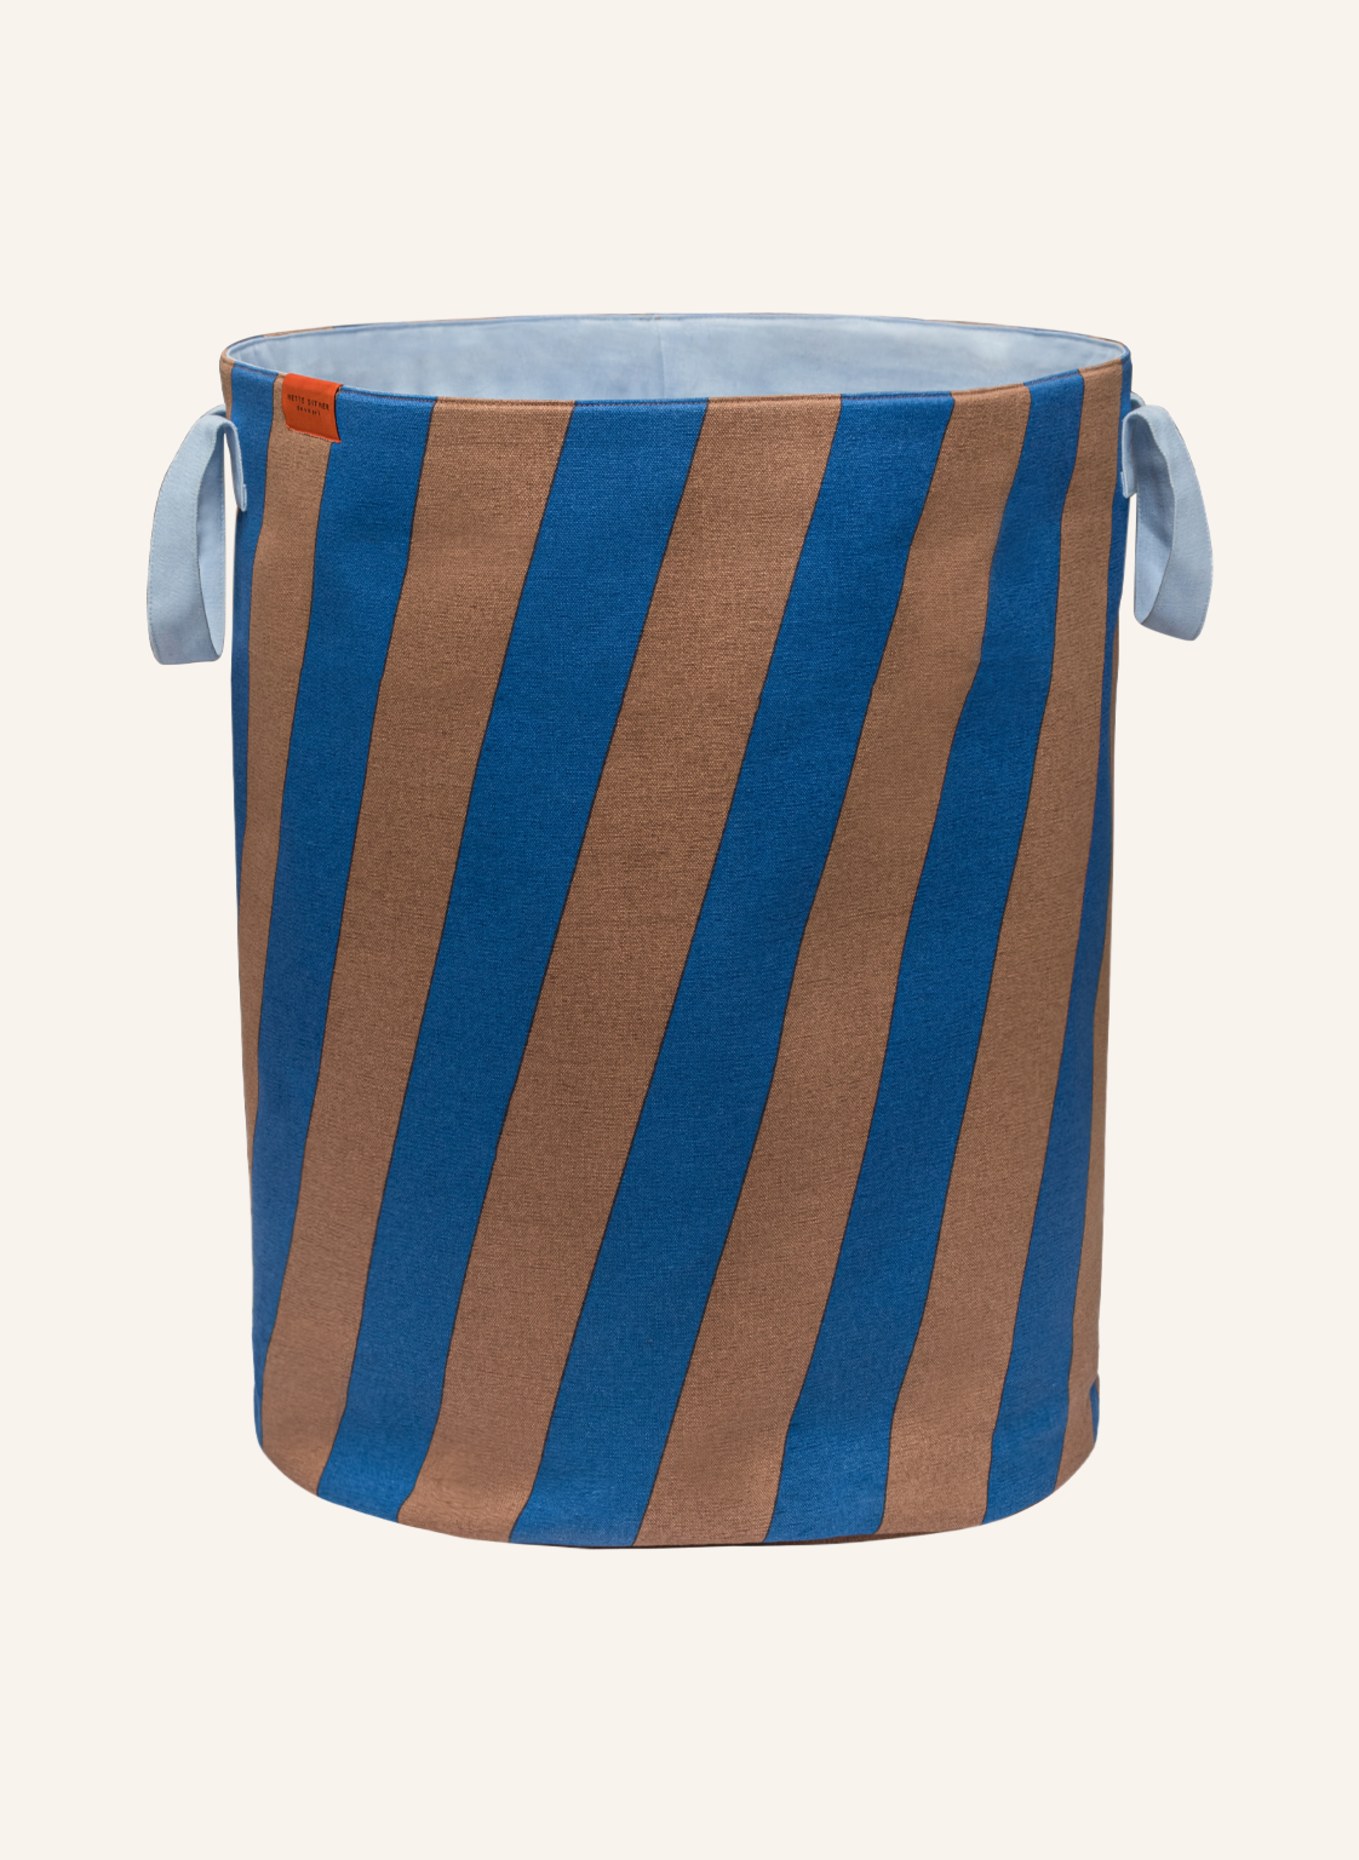 METTE DITMER Laundry basket NOVA ARTE, Color: BLUE/ BEIGE (Image 1)